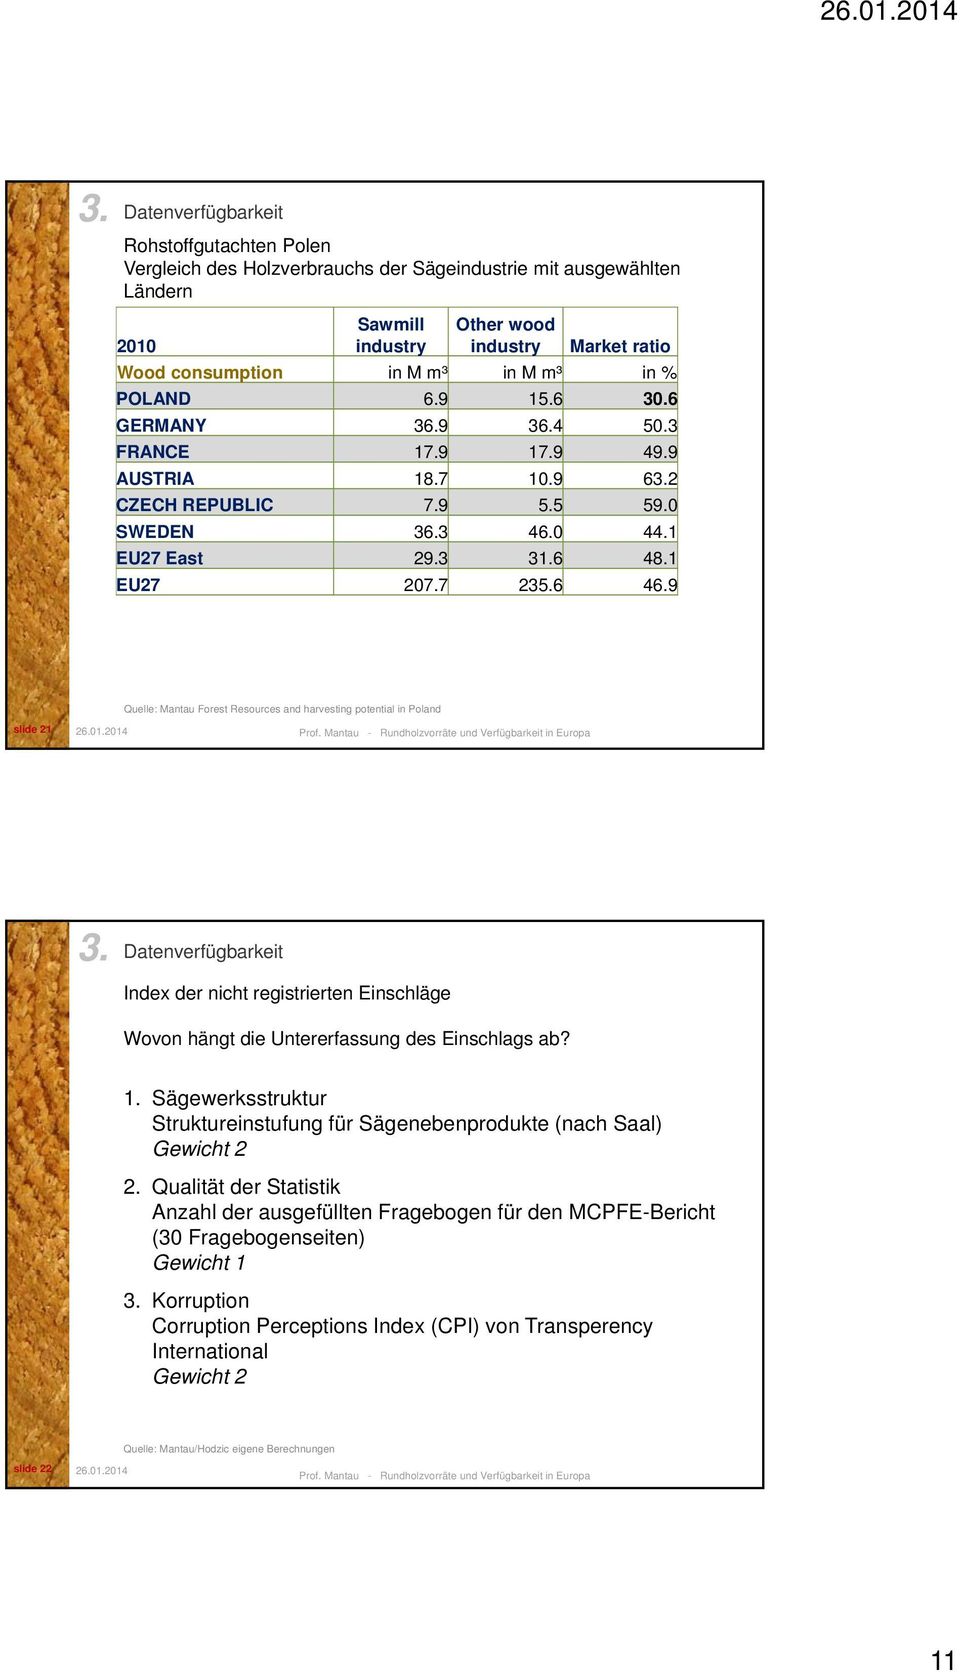 9 Quelle: Mantau Forest Resources and harvesting potential in Poland slide 21 3. Datenverfügbarkeit Index der nicht registrierten Einschläge Wovon hängt die Untererfassung des Einschlags ab? 1.